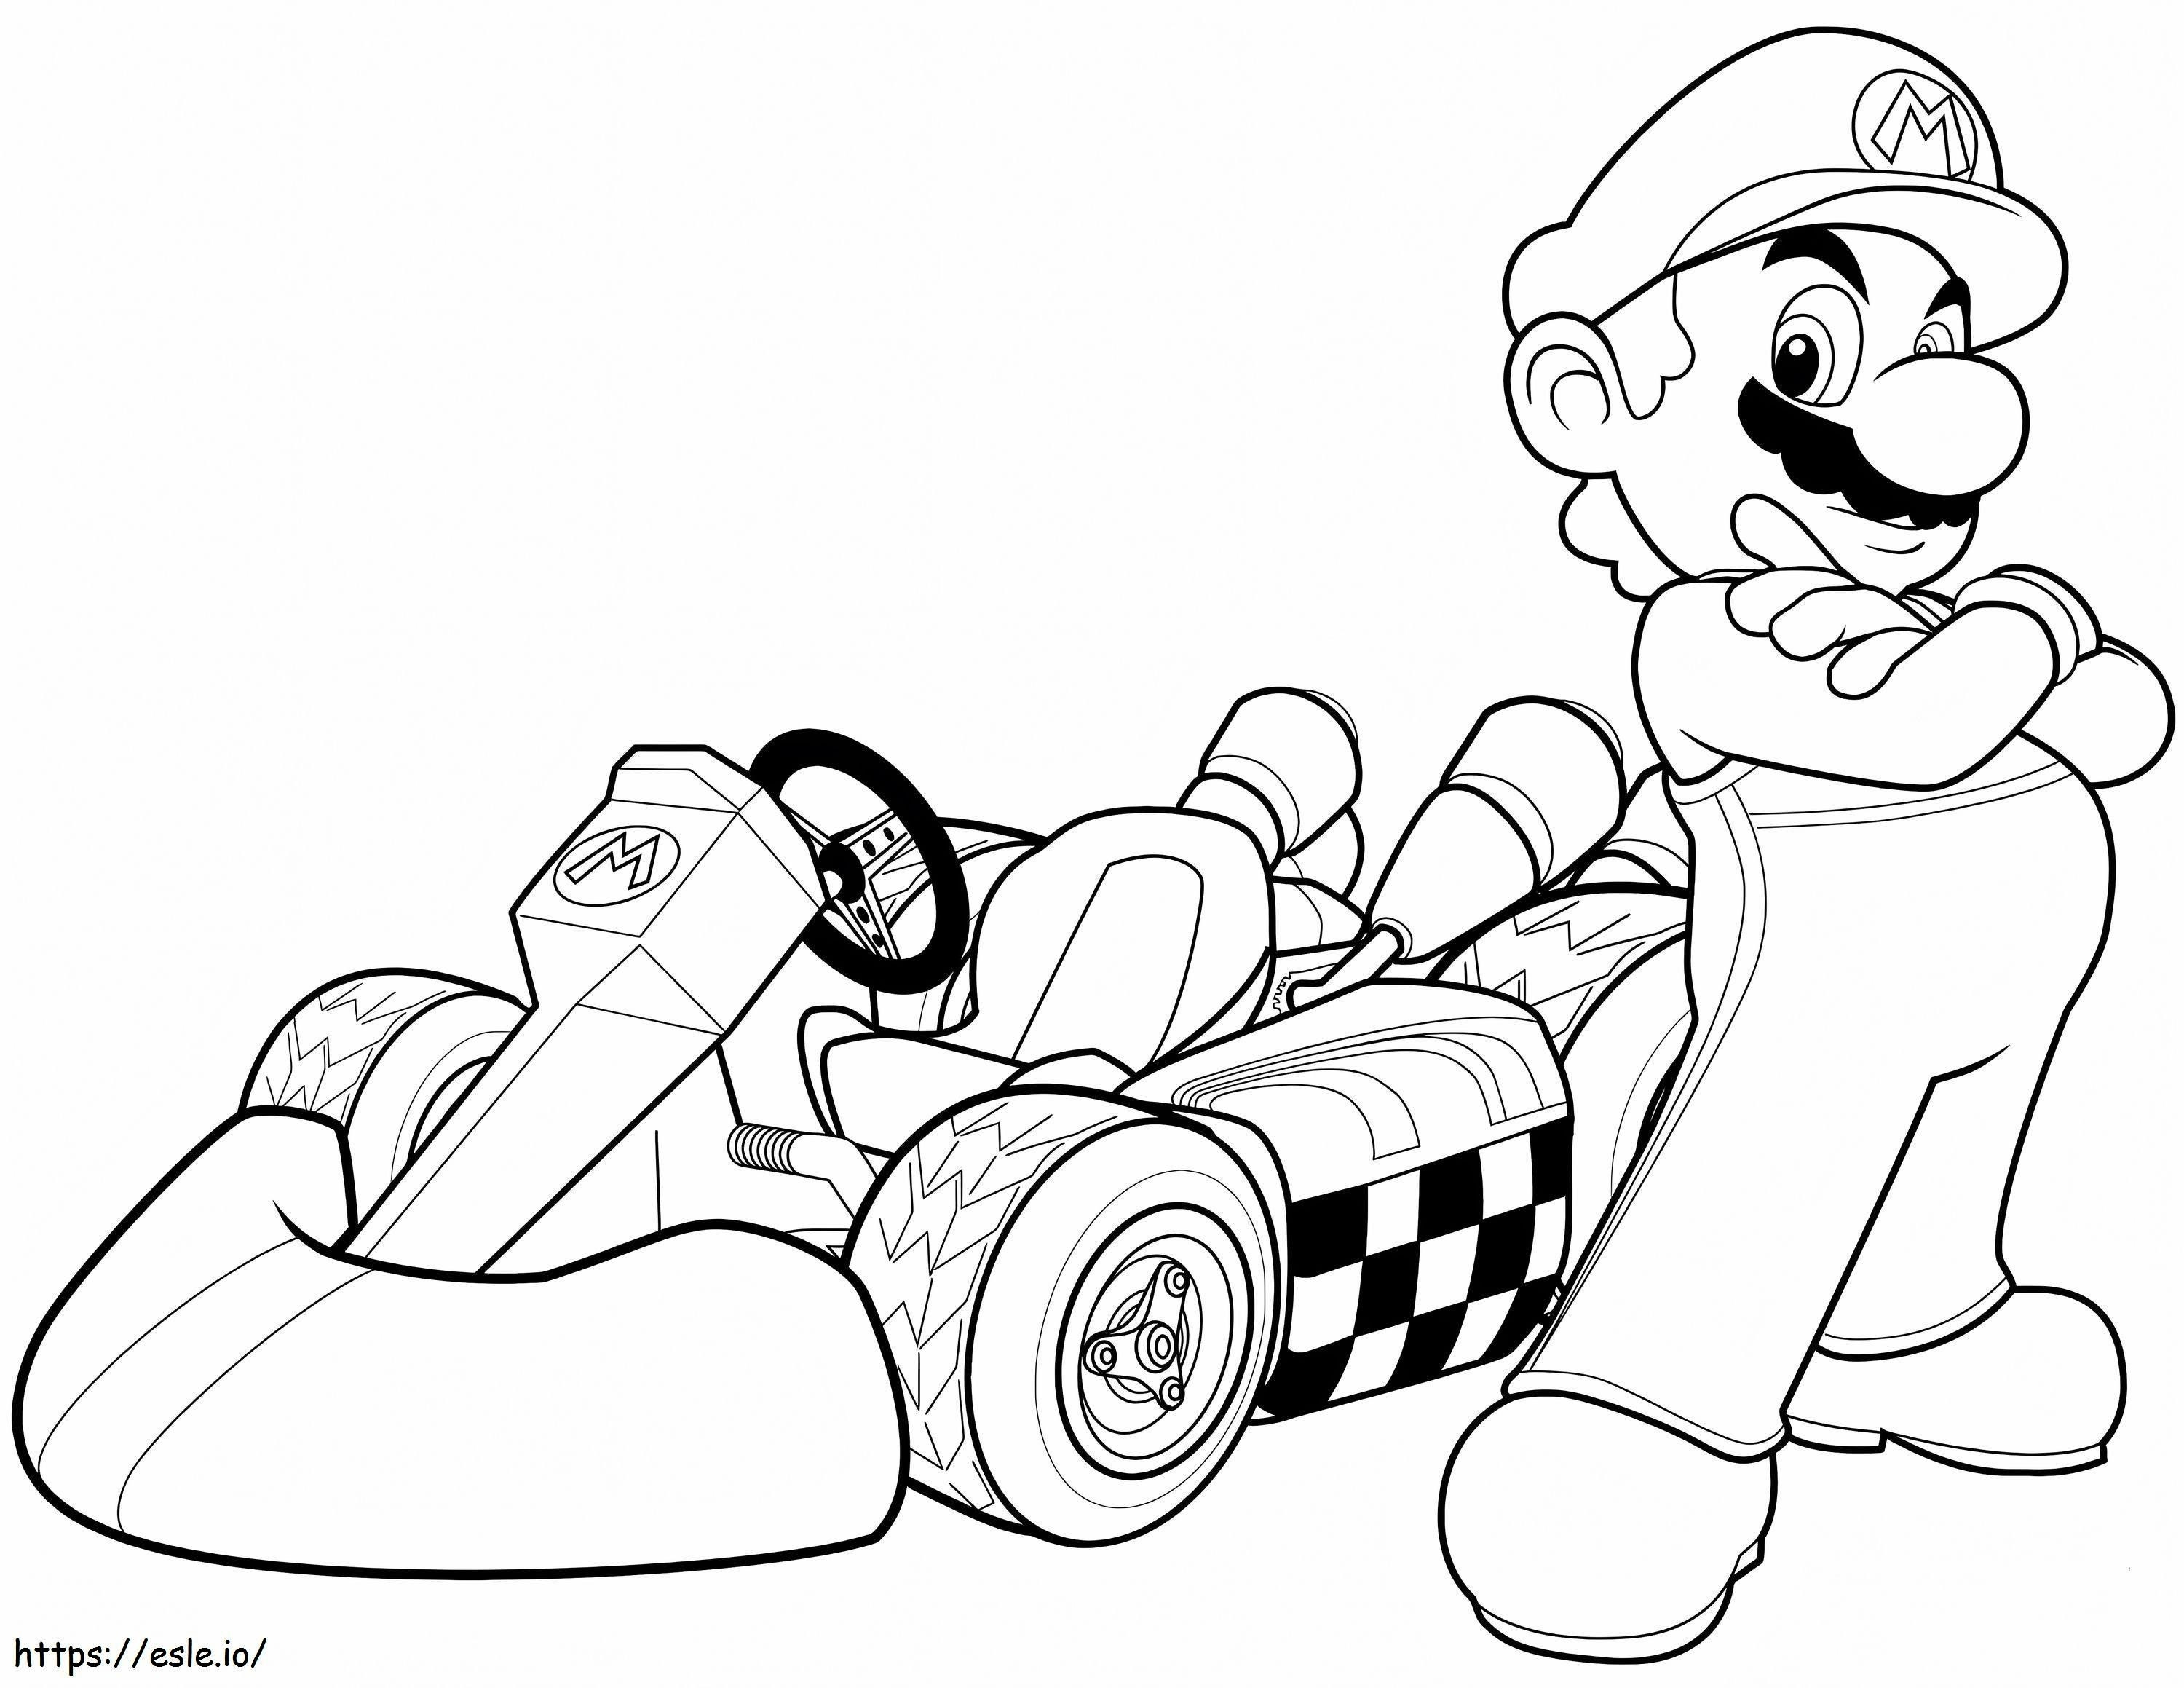 Racing Boy Mario coloring page